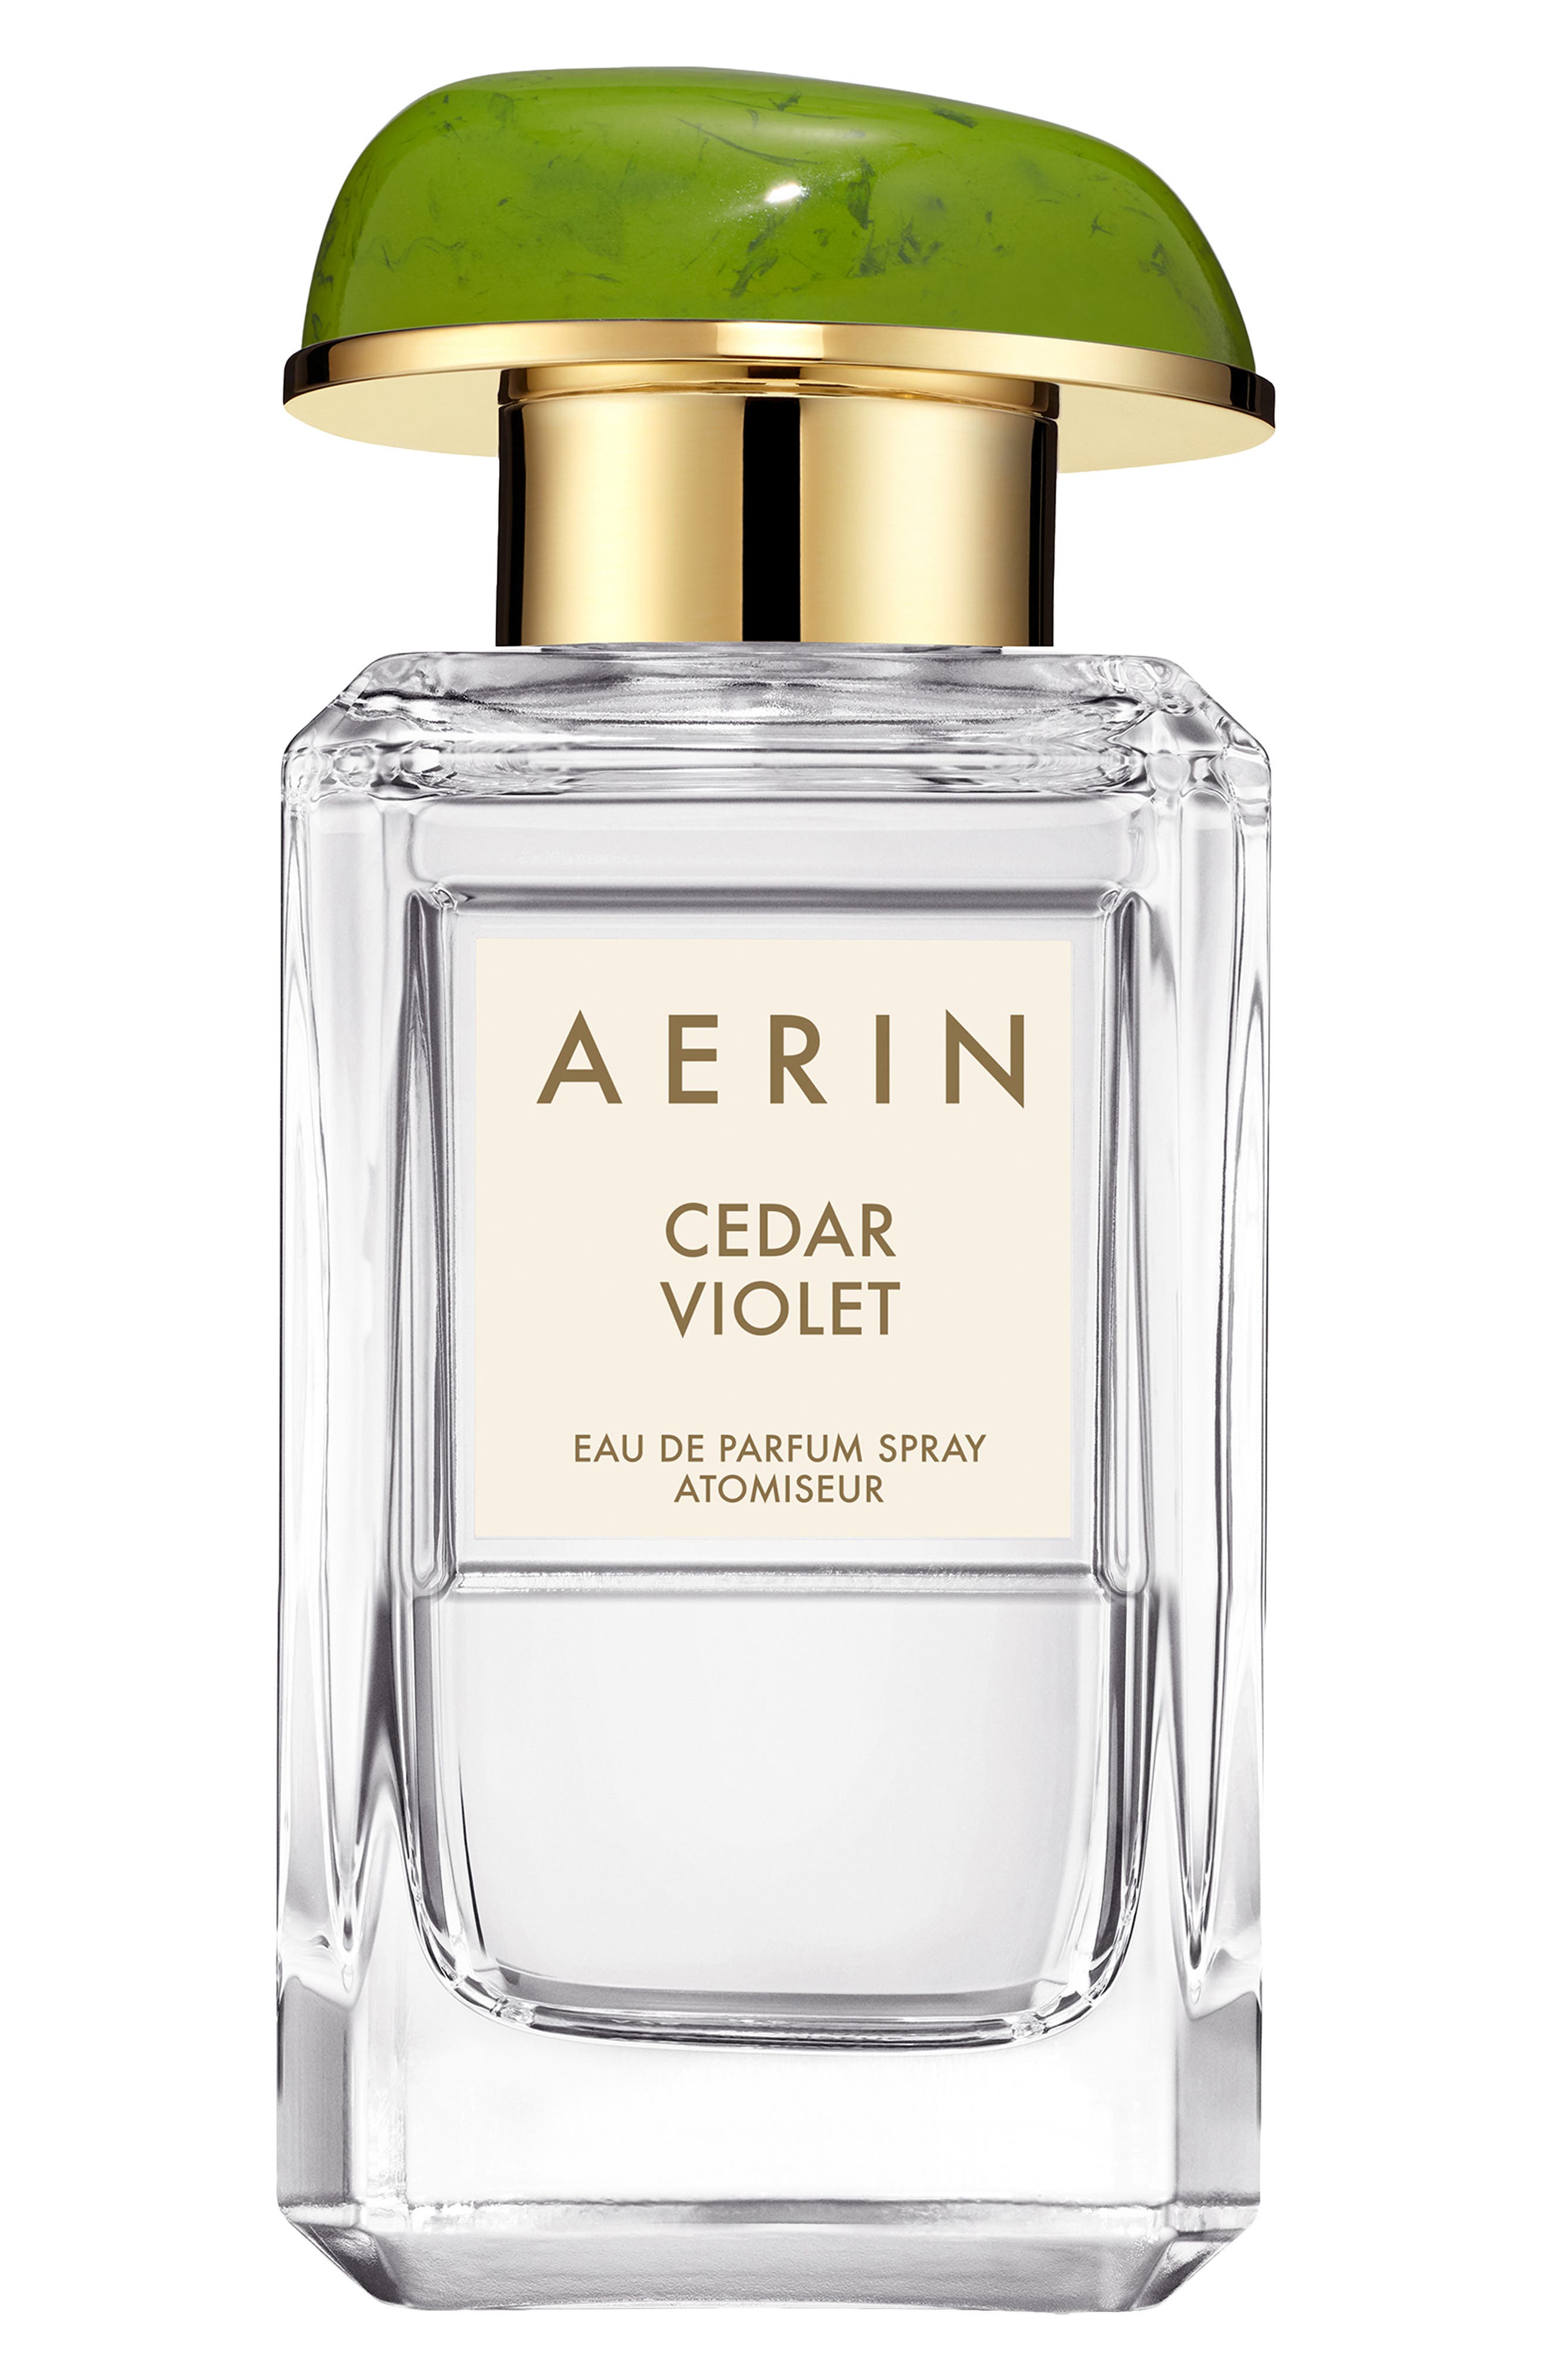 AERIN Cedar Violet Eau de Parfum Spray 1.7 oz